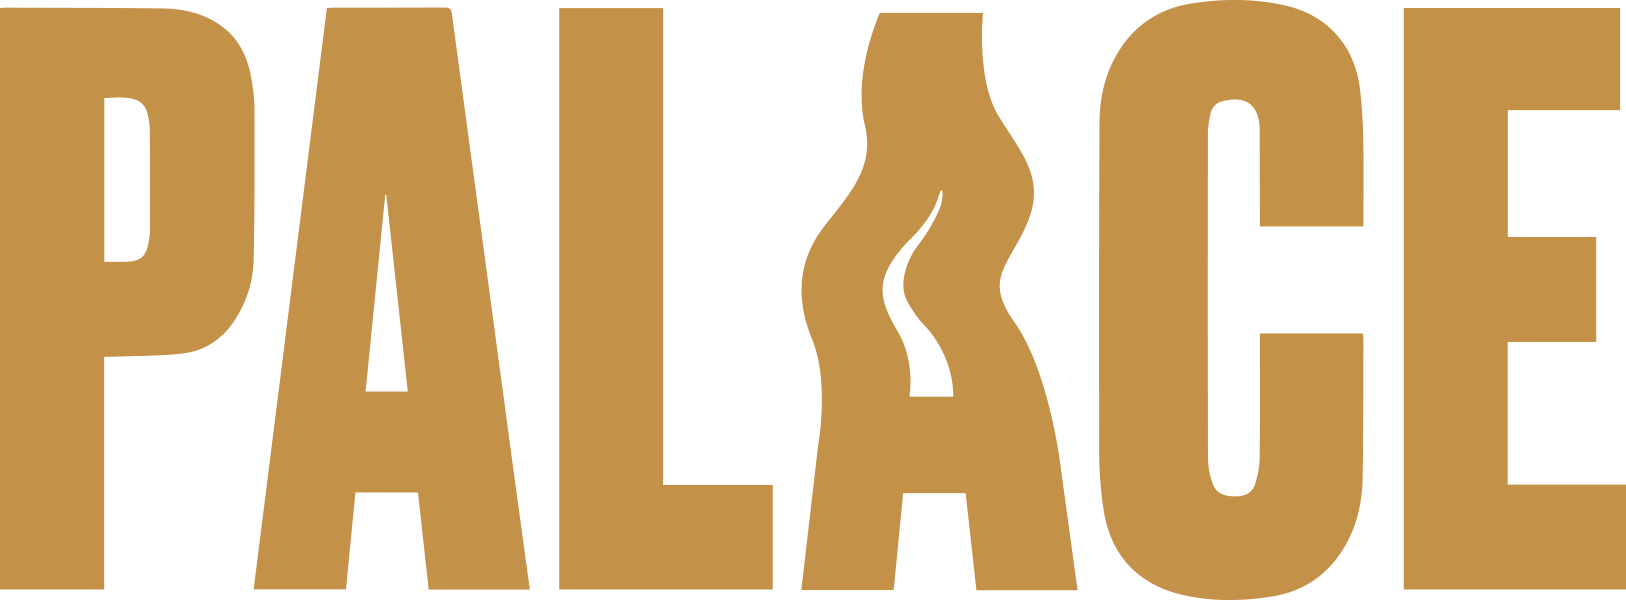 Palace Logo